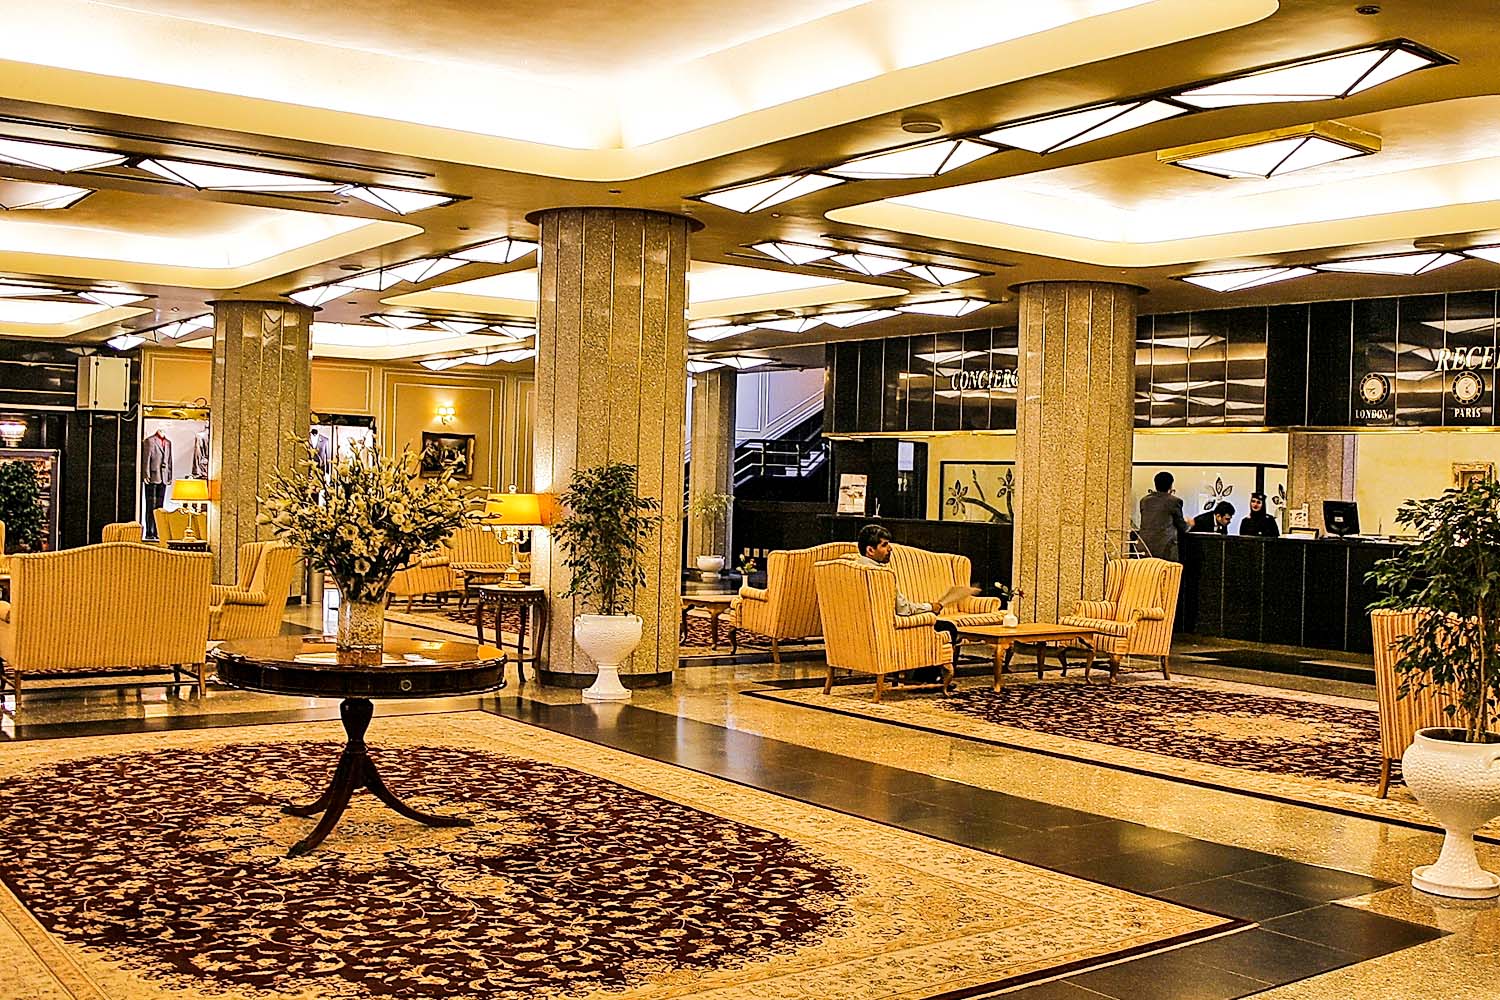 Bandar Abbas Hormoz Hotel